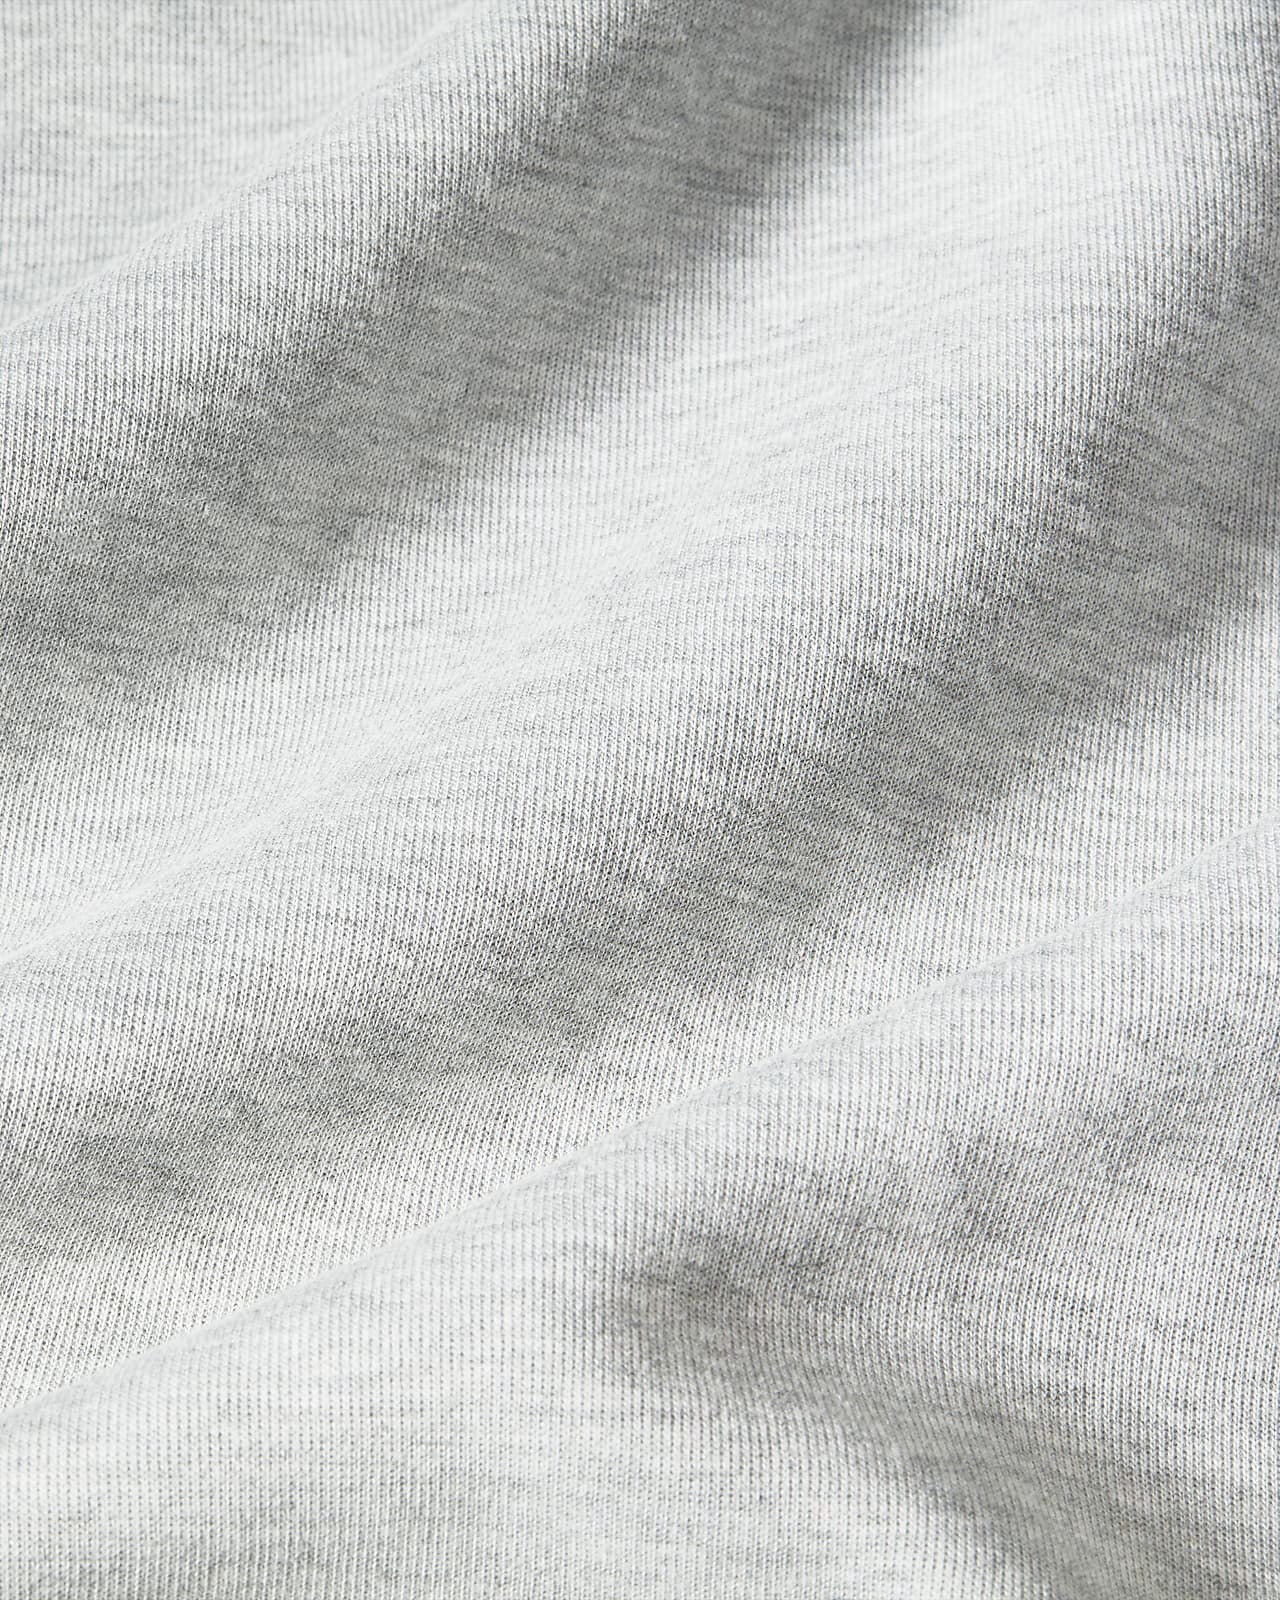 Nike Tech Fleece Jogger Pants Silk Grey Womens BV3472-063 size 2XL NWT $90